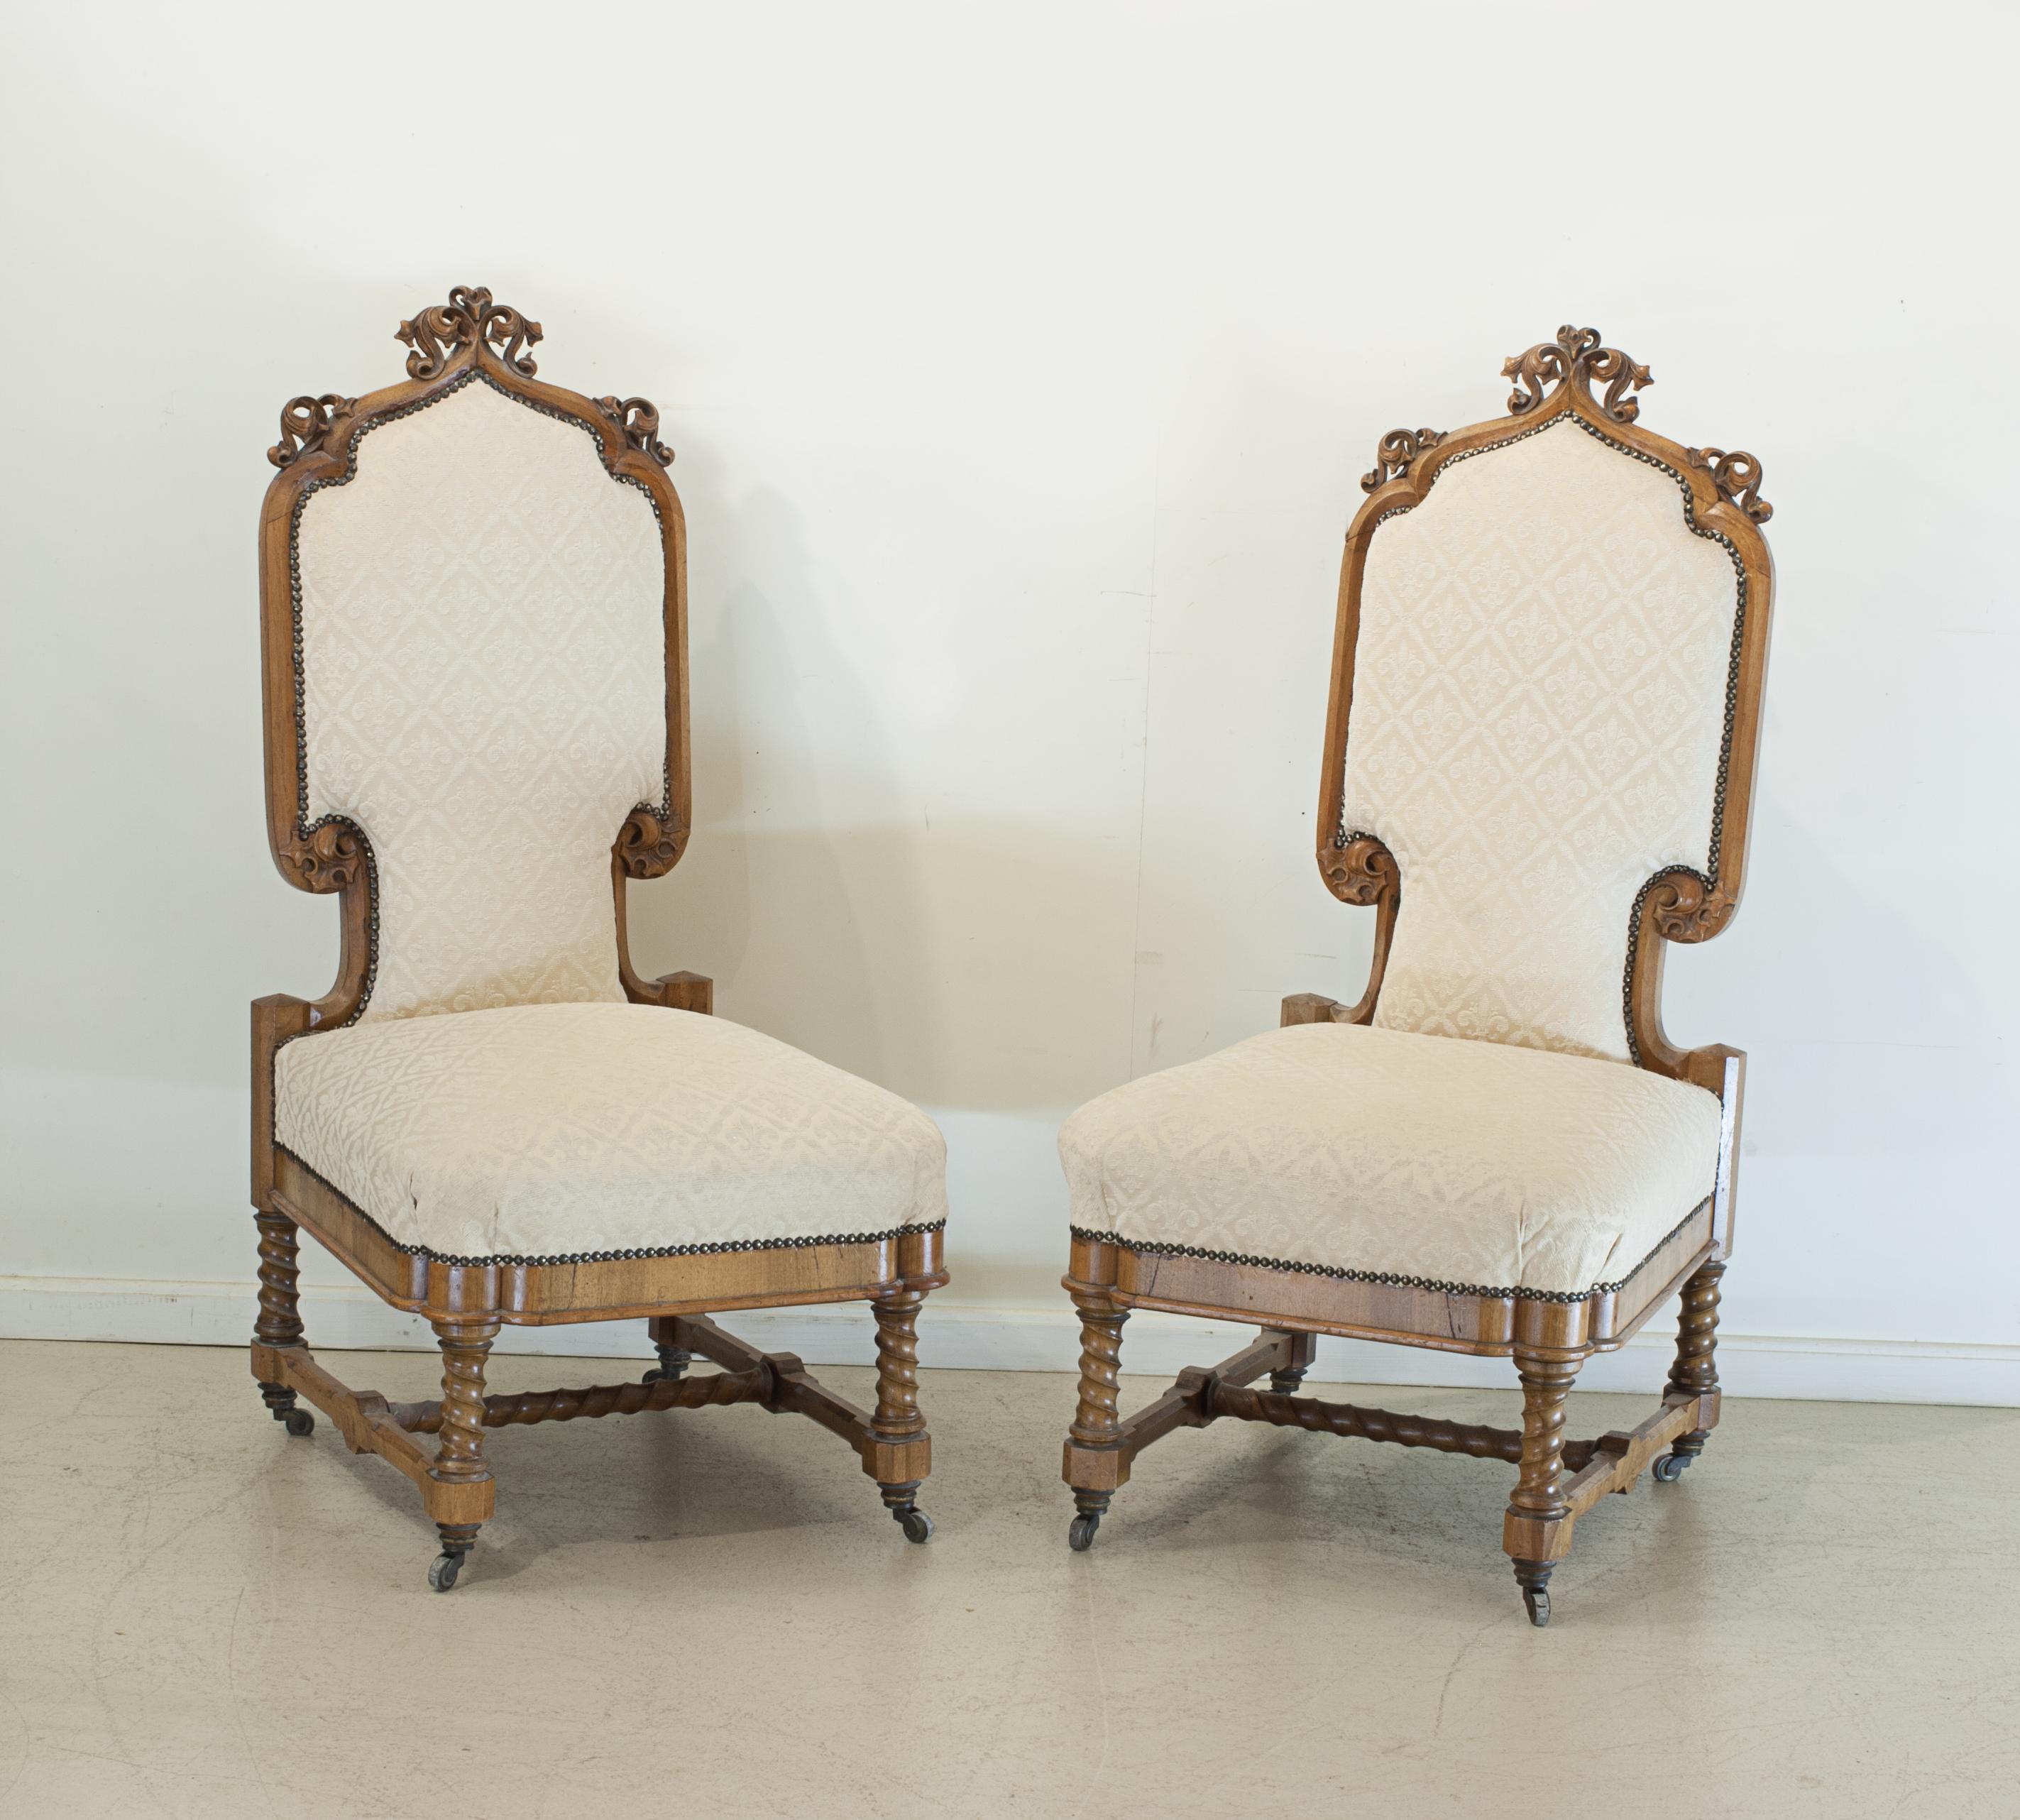 Paire de chaises continentales sculptées du 19ème siècle.
Une belle paire de chaises de salon Arts & Crafts tapissées, les cadres en noyer sculpté avec des détails nets, la civière en forme de tire-bouchon en spirale (style torsion d'orge) ainsi que